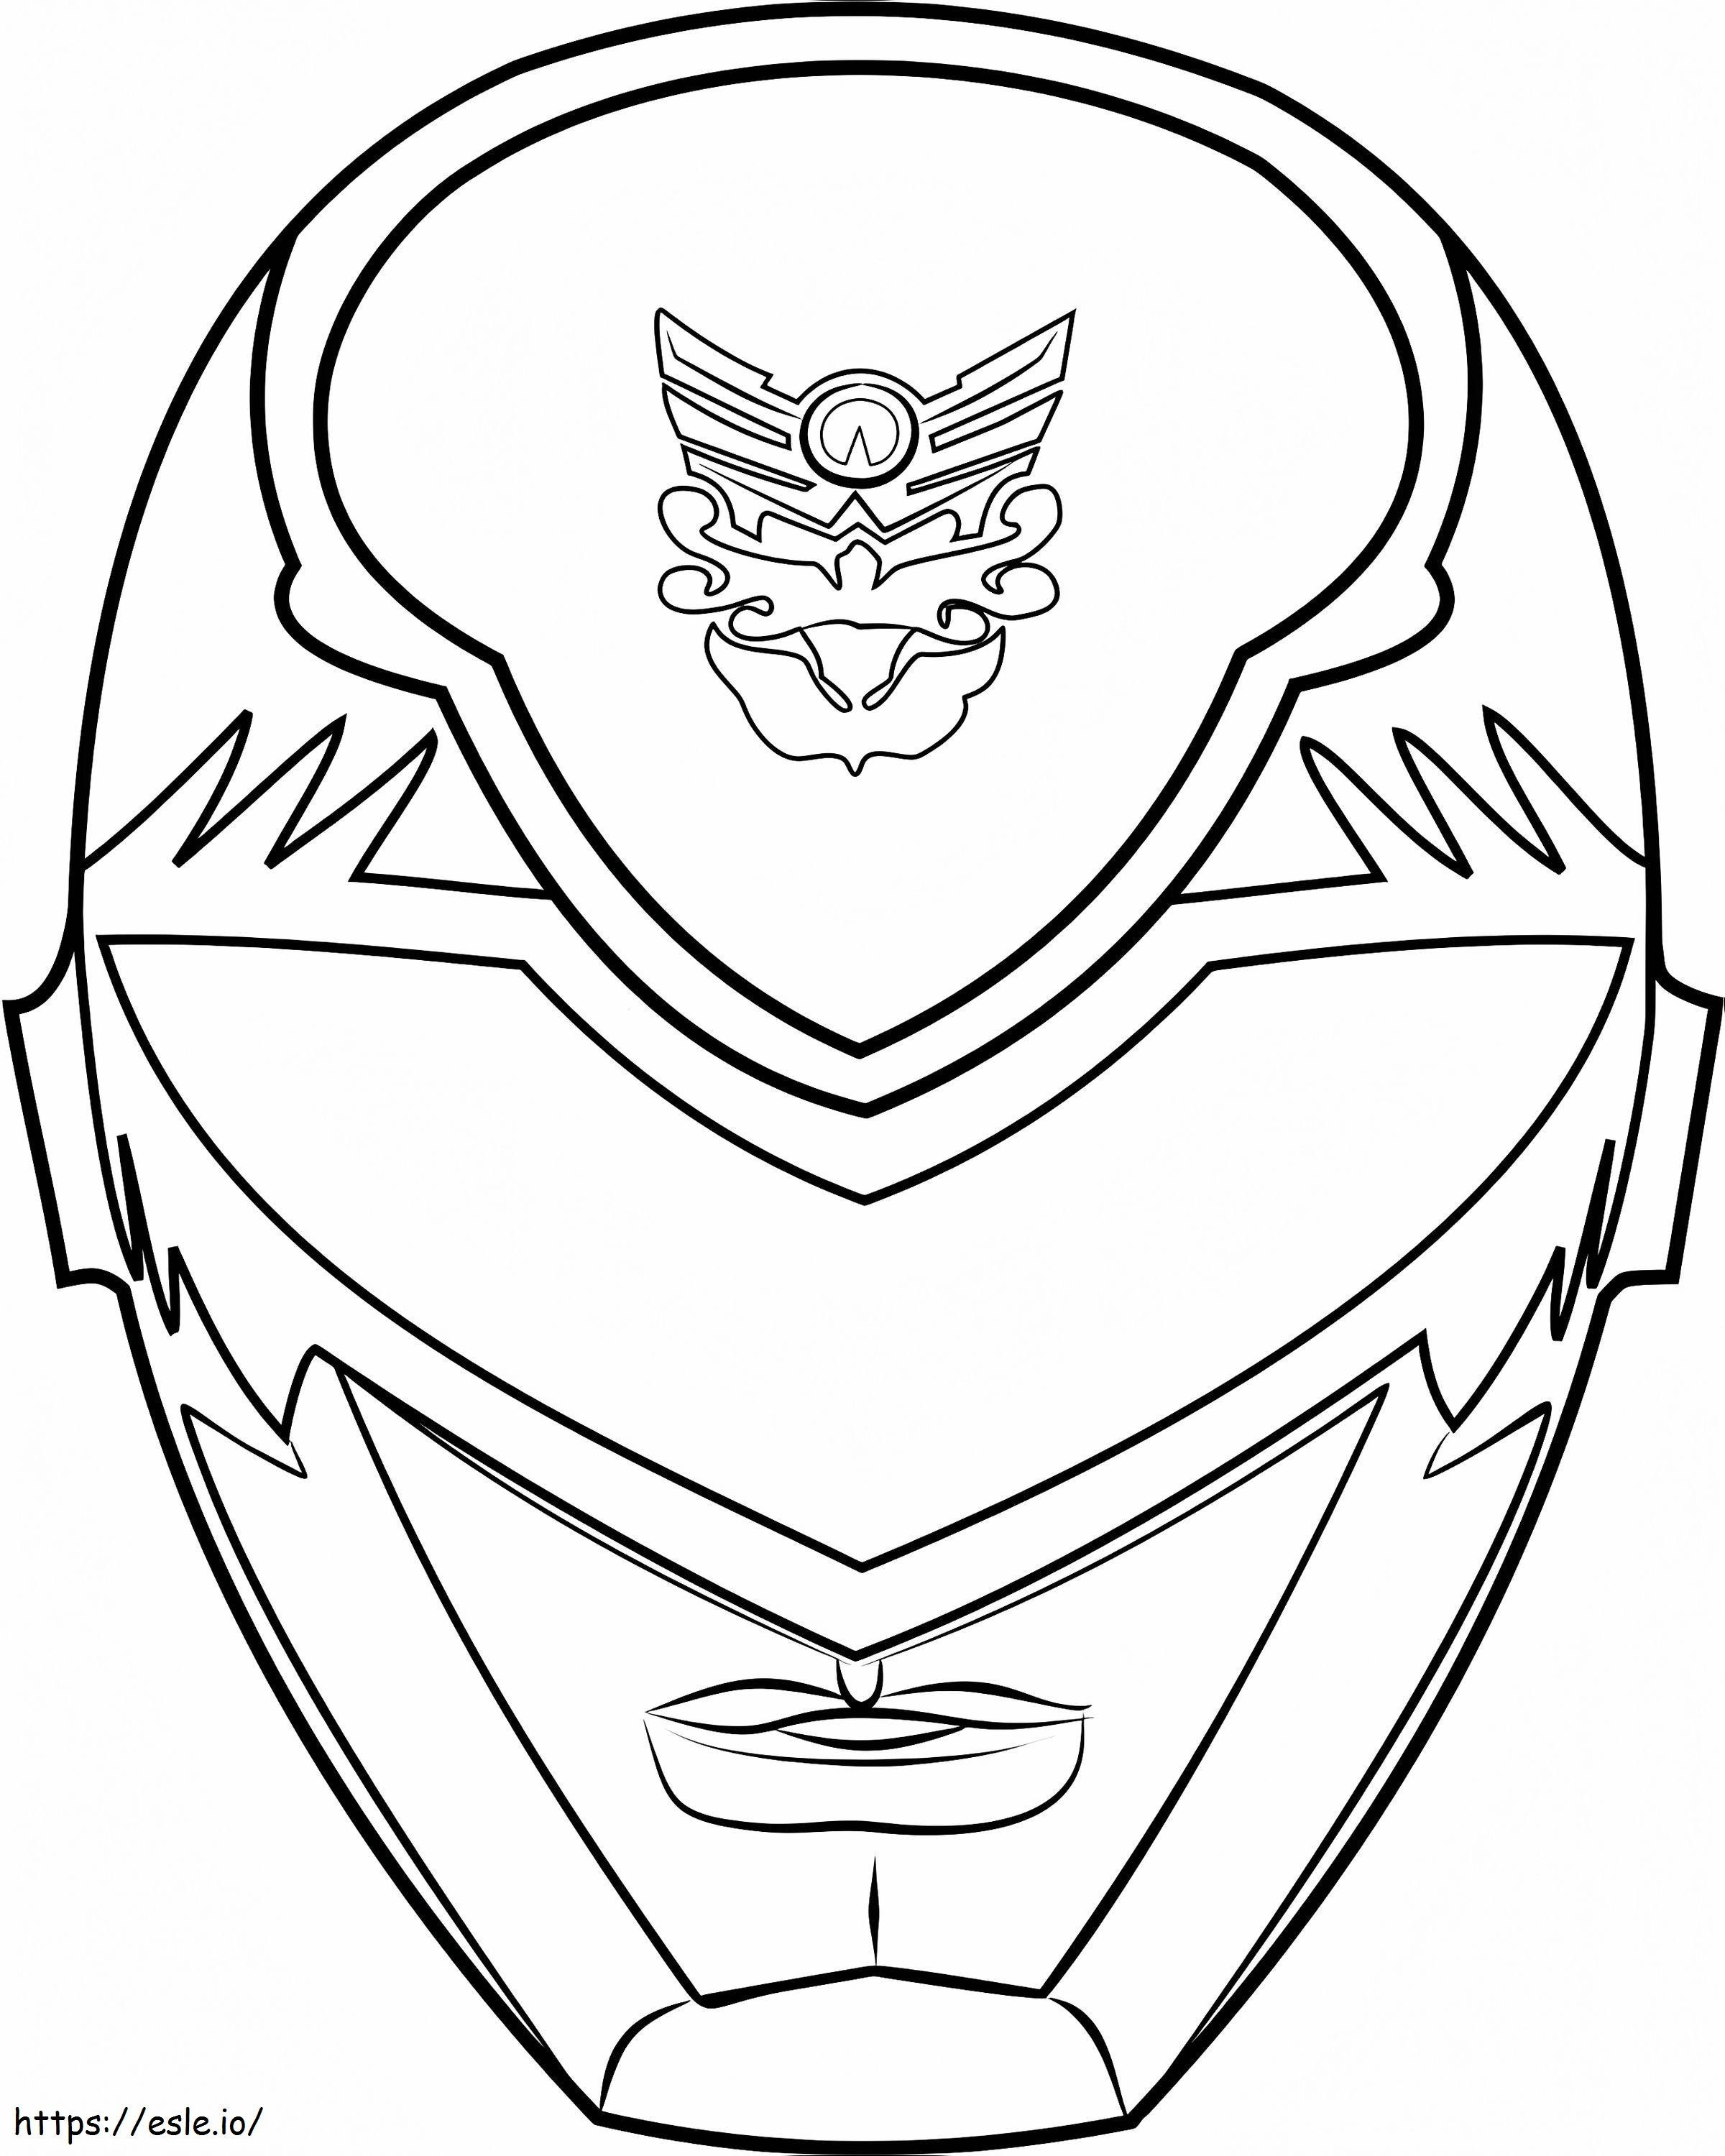 1530501643Power Ranger-Maske1 ausmalbilder